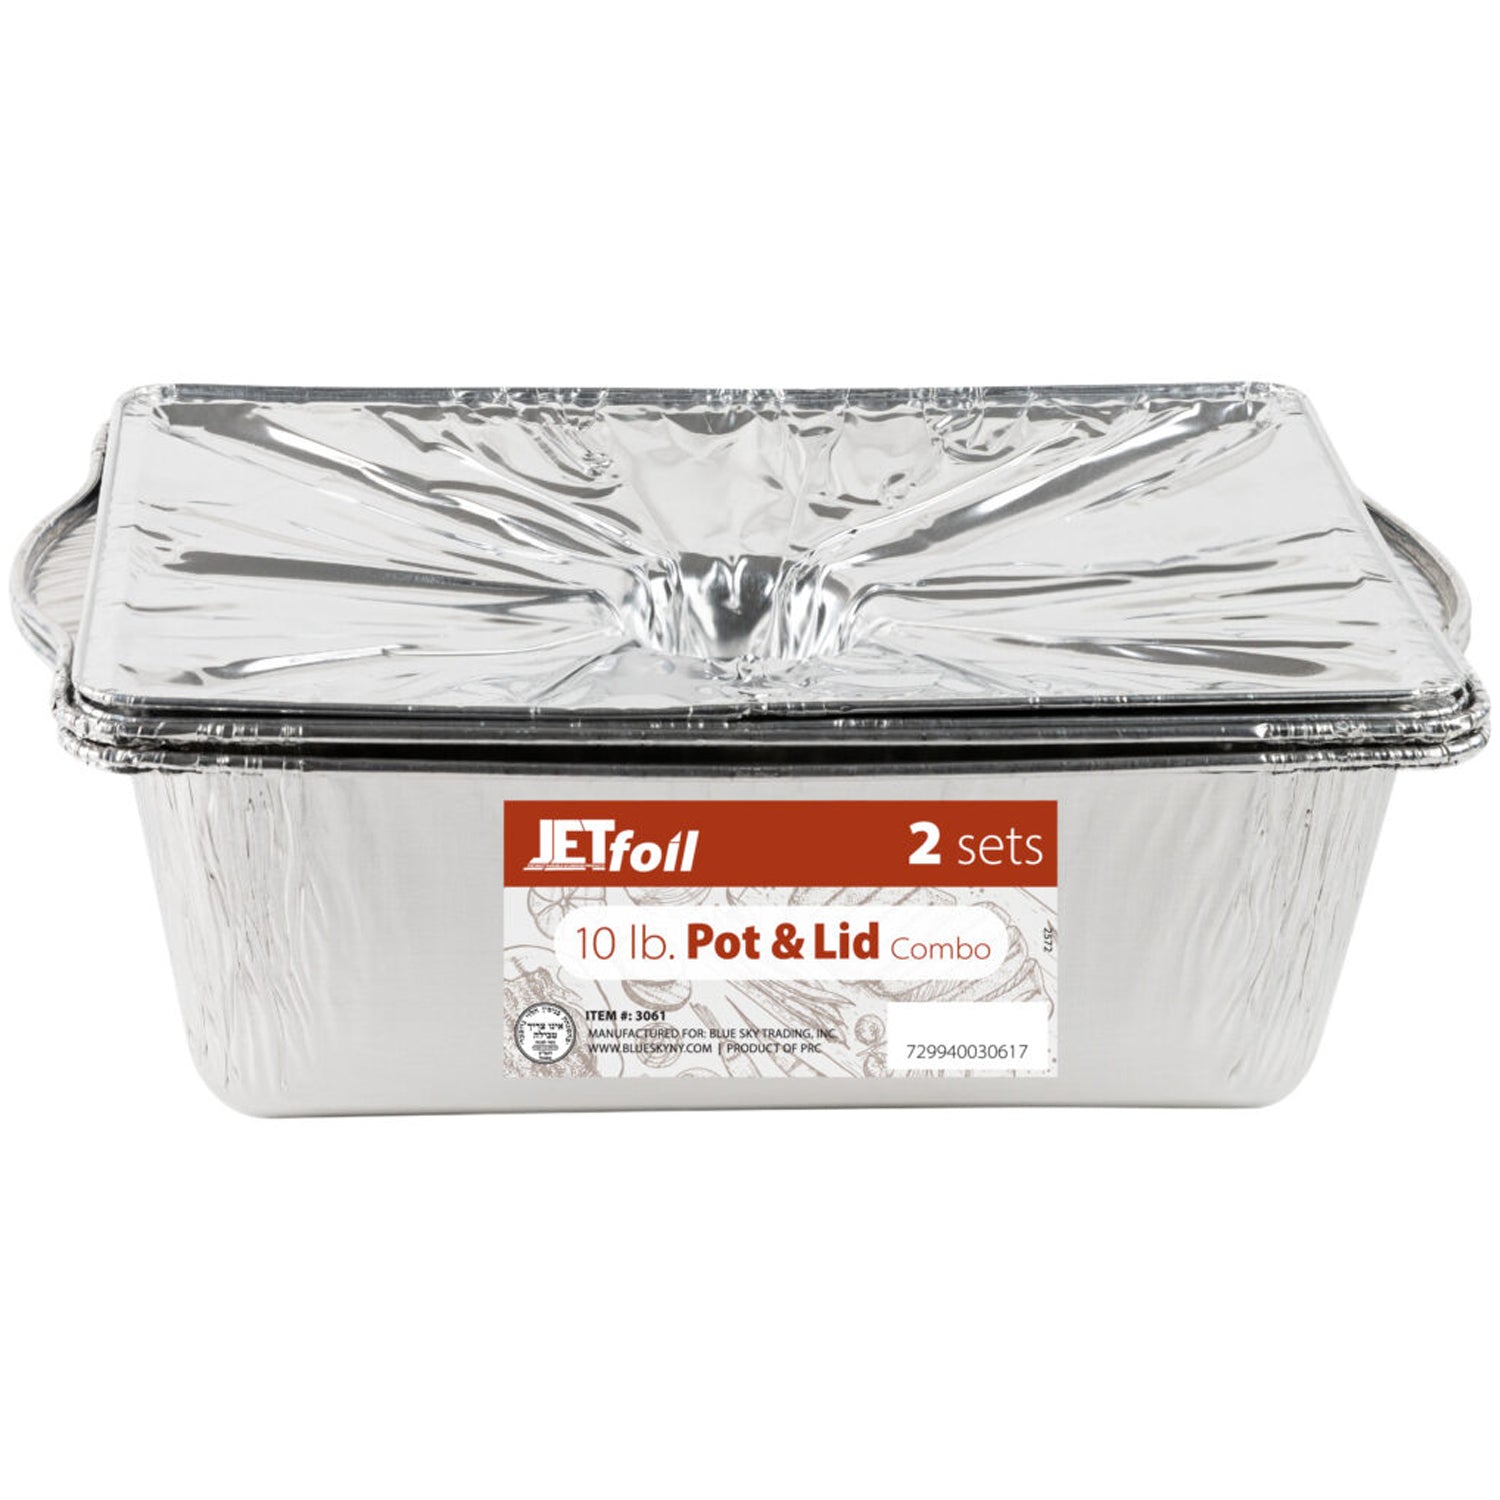 Jet Foil Disposable Aluminum Large Rectangle Pots with Lids Combo